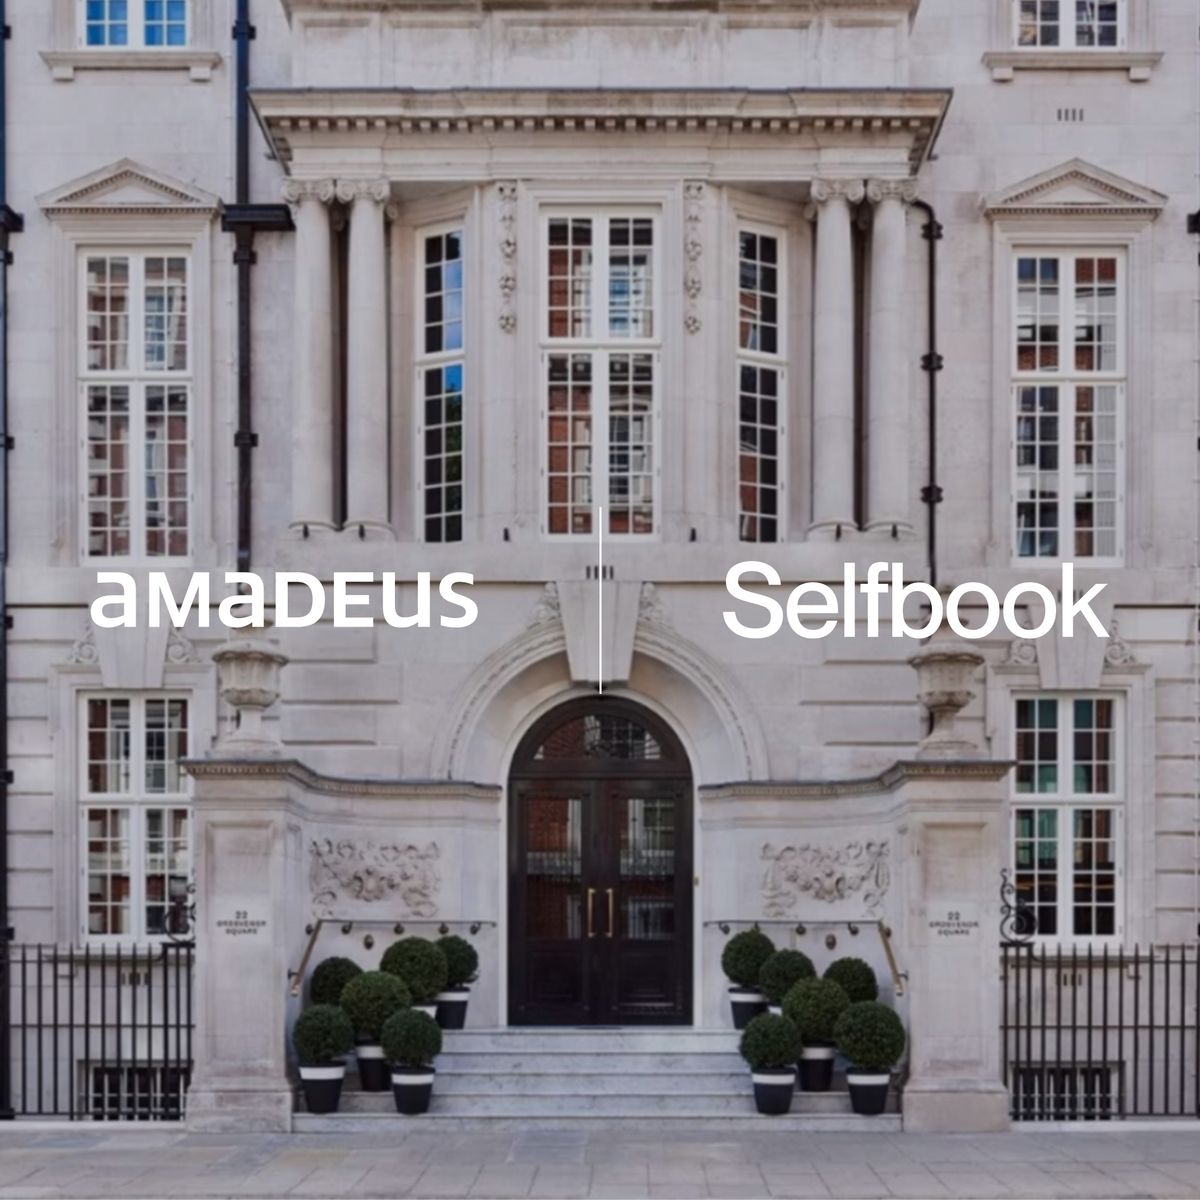 Selfbook Partners with Amadeus’ iHotelier®